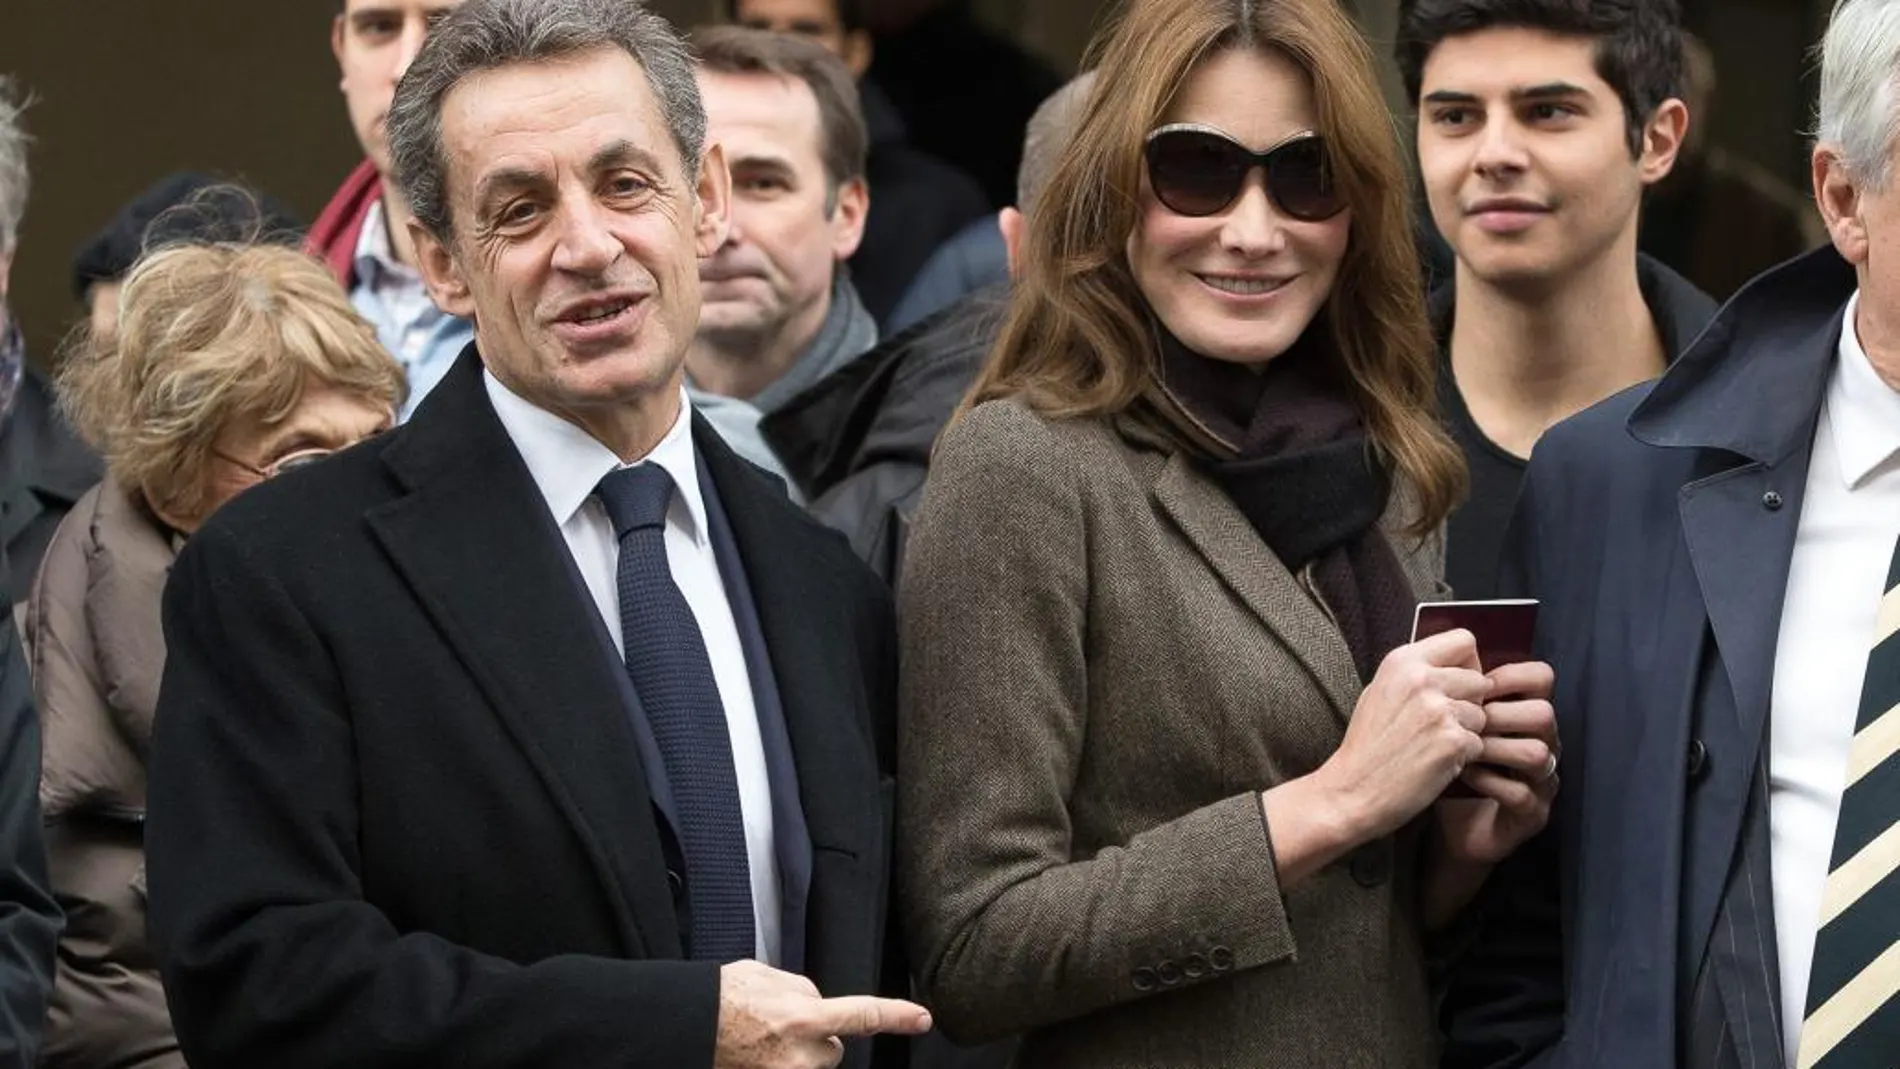 Nicolas Sarkozy con su mujer Carla Bruni